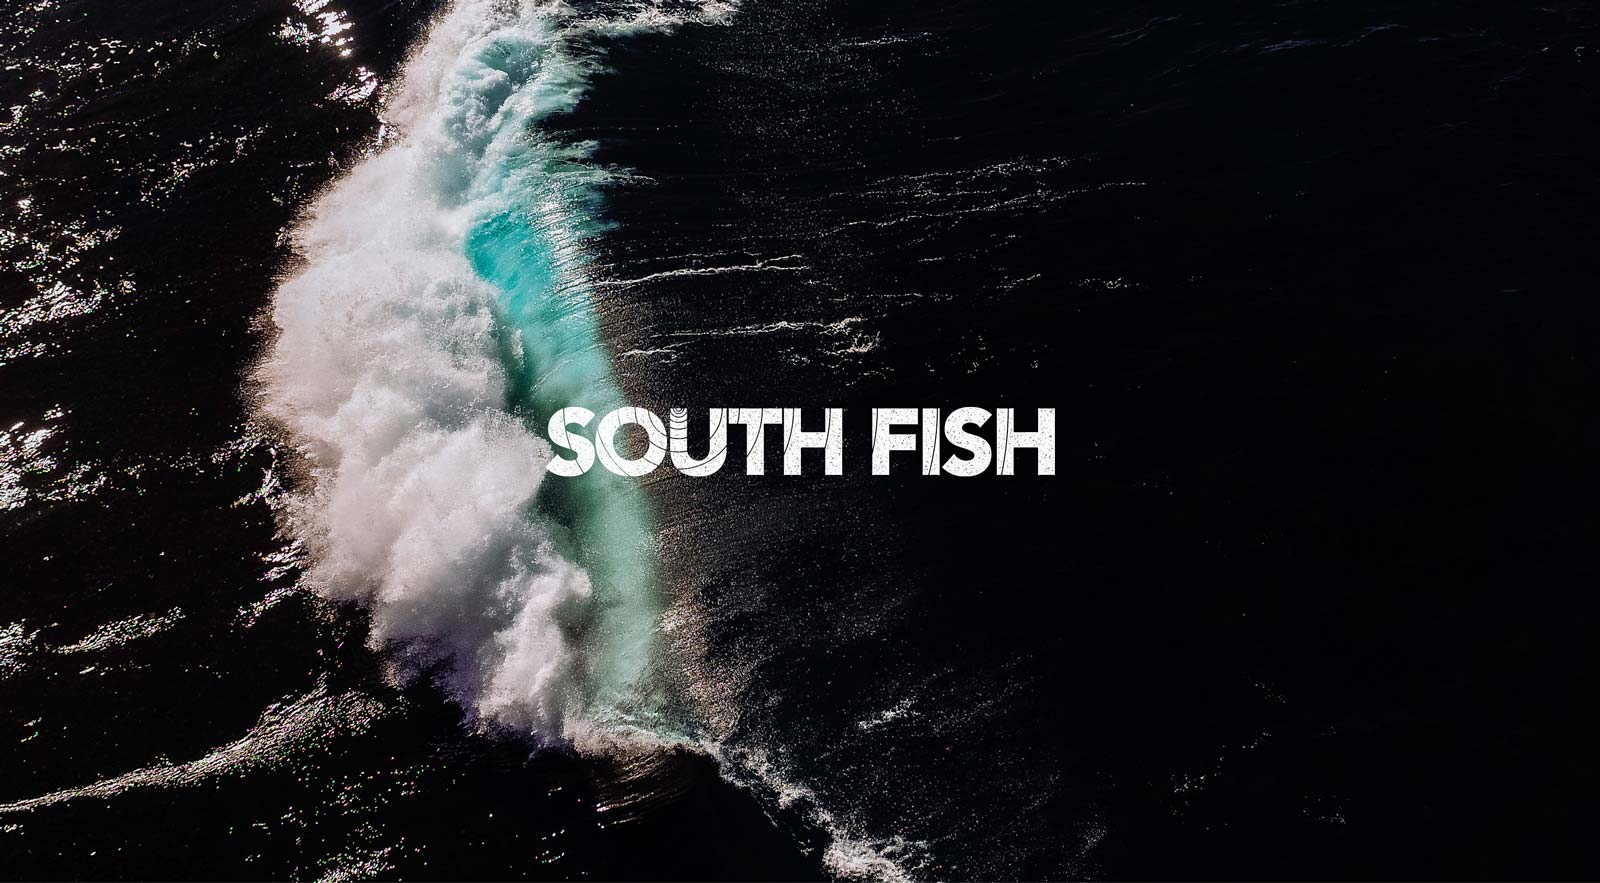 South Fish